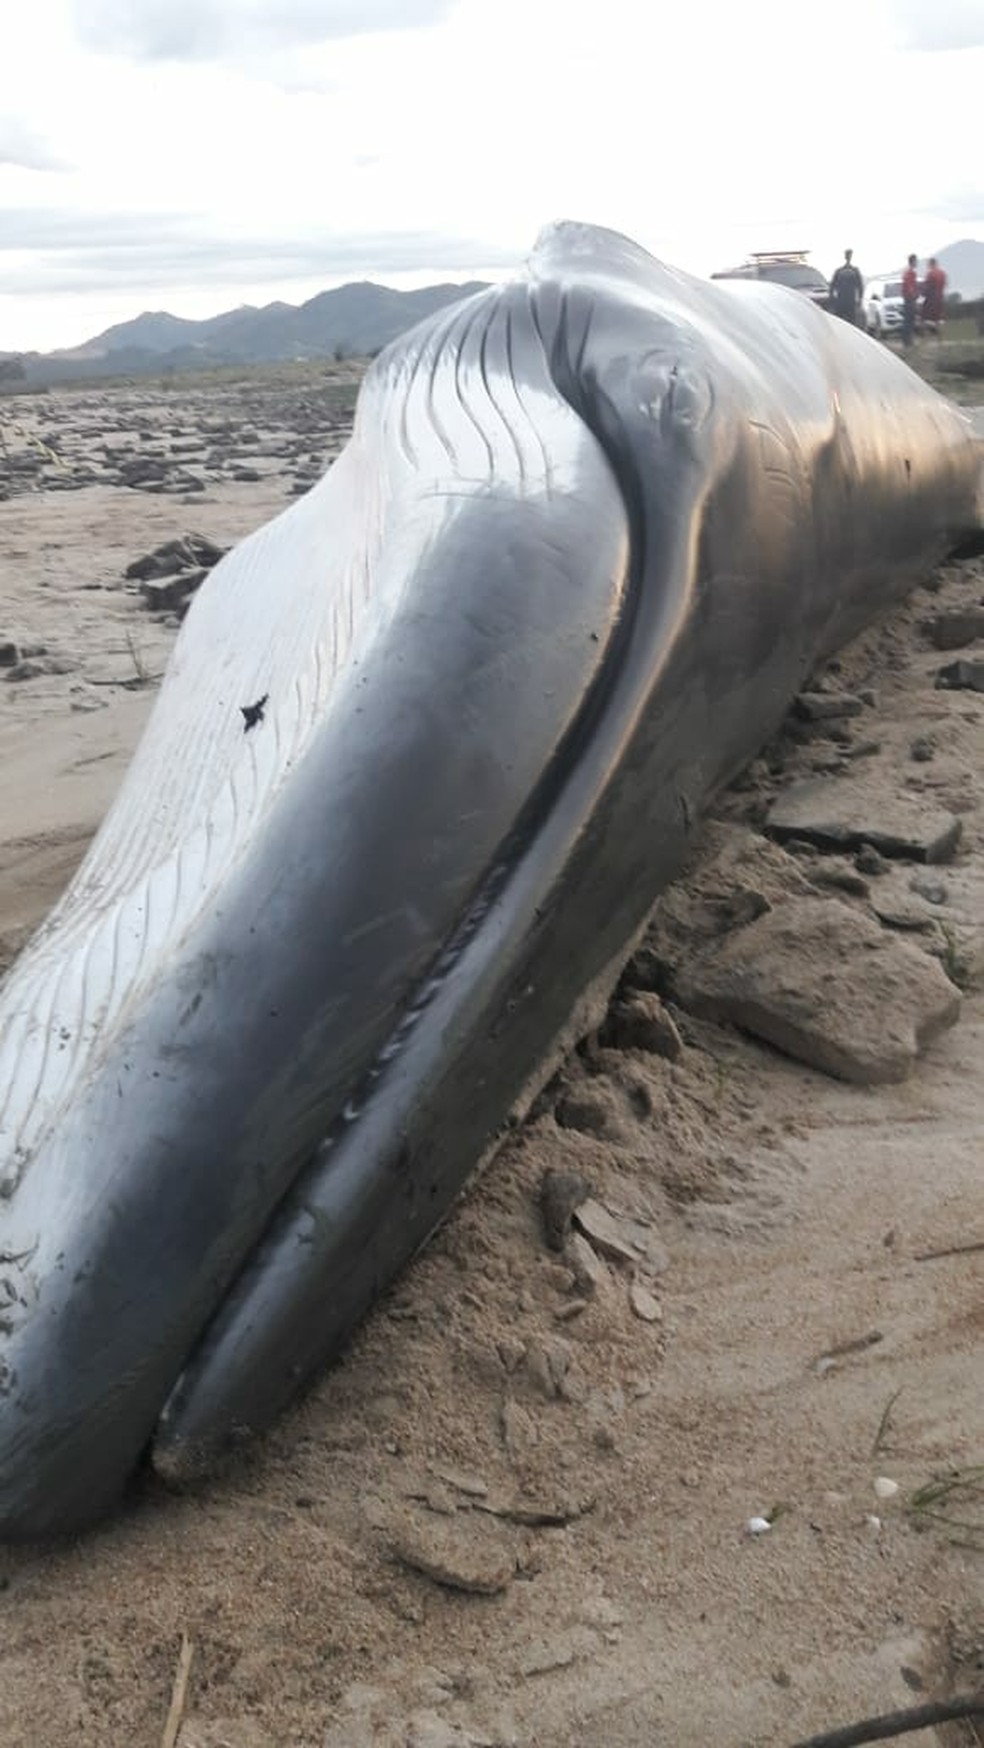 Baleia tinha 7,5 metros e estava debilitada, segundo pesquisadores (Foto: PMP/Divulgação)